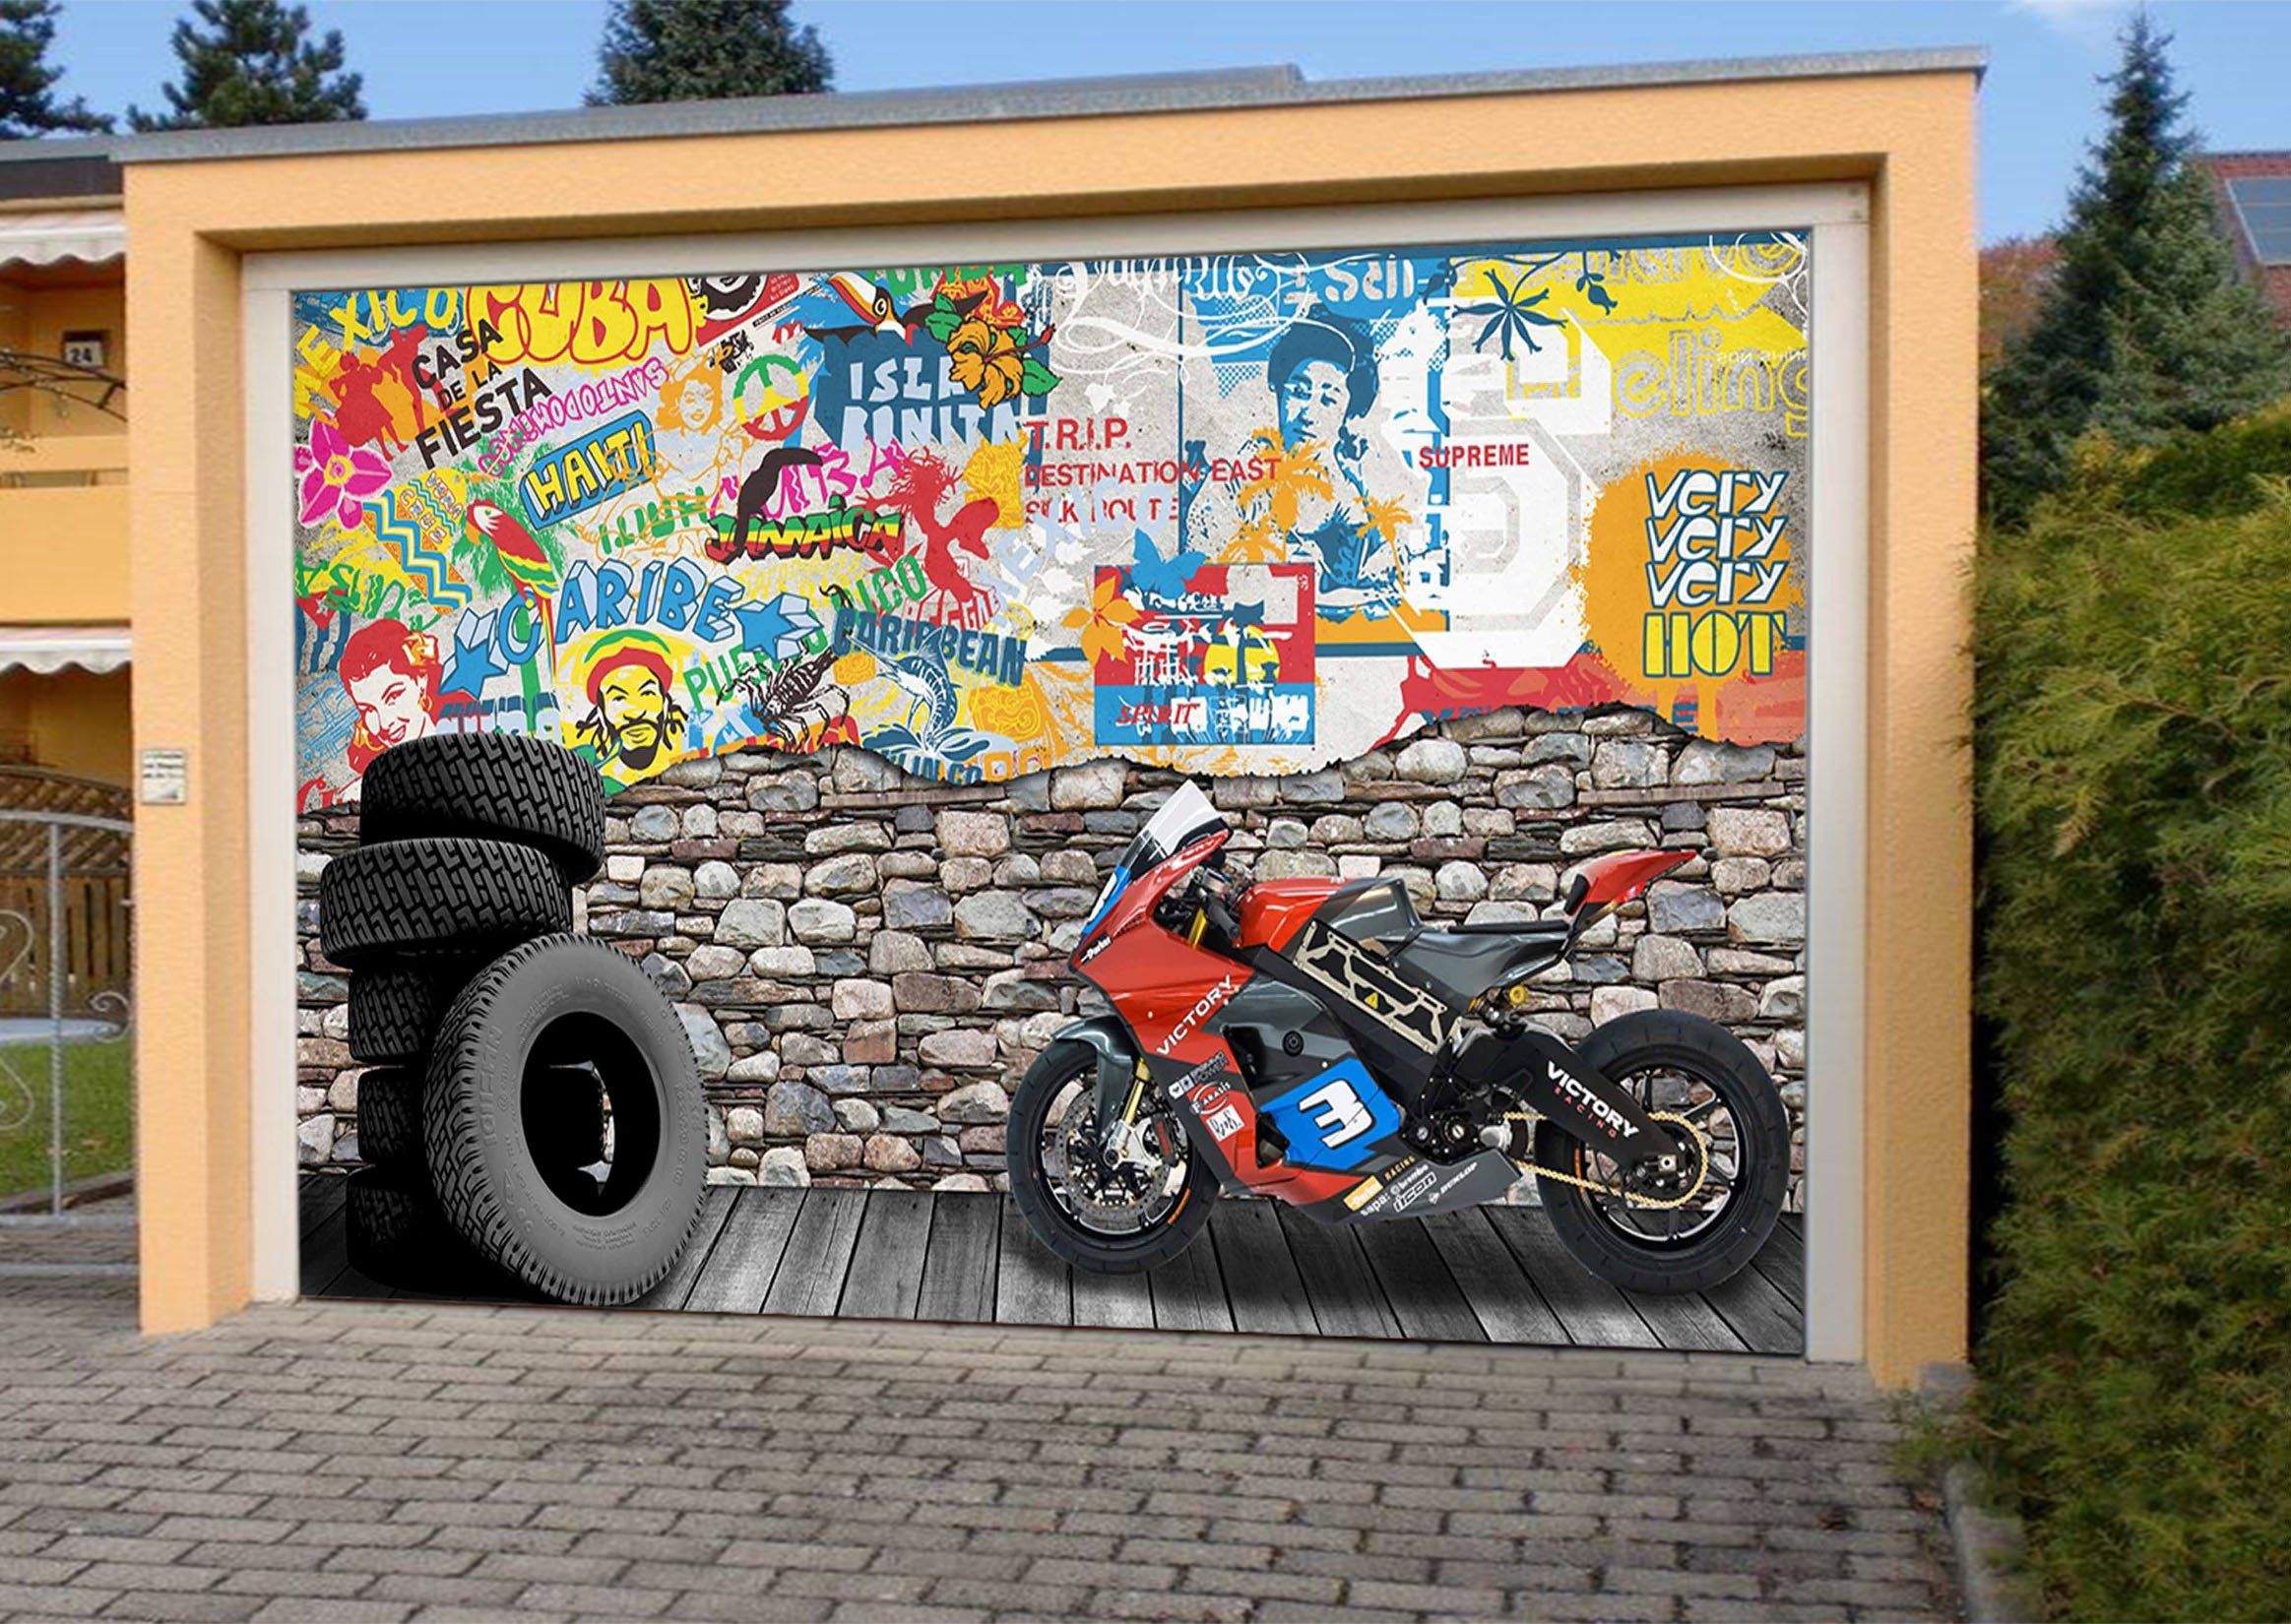 3D Motorcycle Graffiti Tires 387 Garage Door Mural Wallpaper AJ Wallpaper 